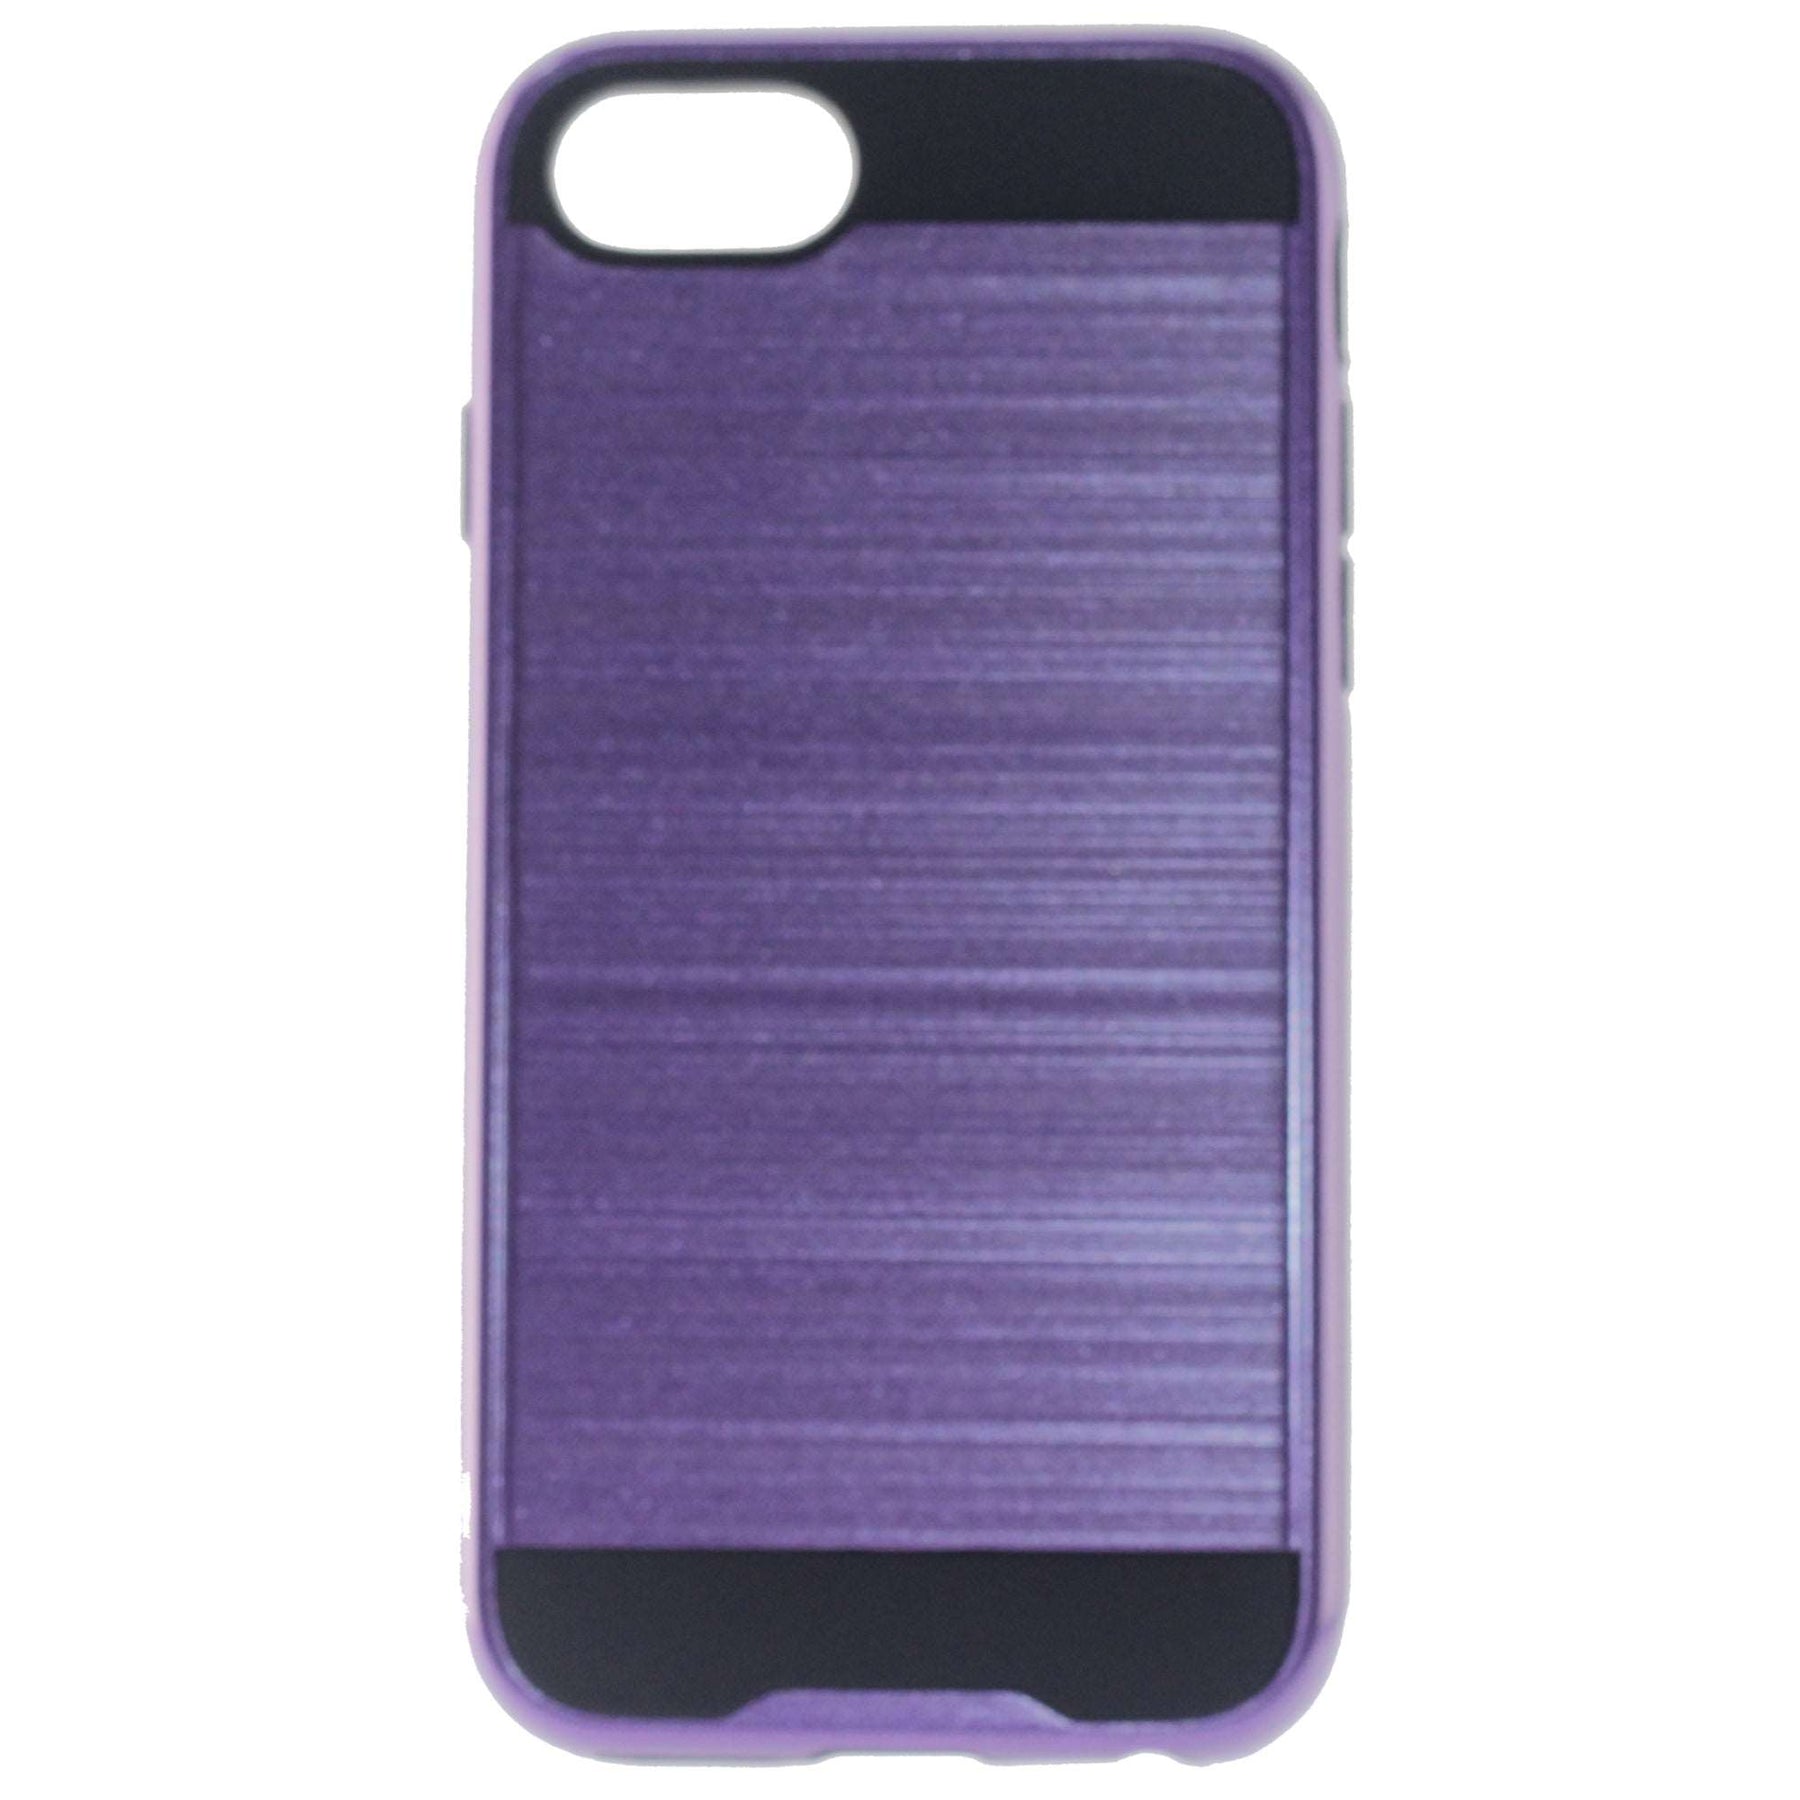 Apple, iPhone 6/6S, Slim Armor Case, Color Purple.